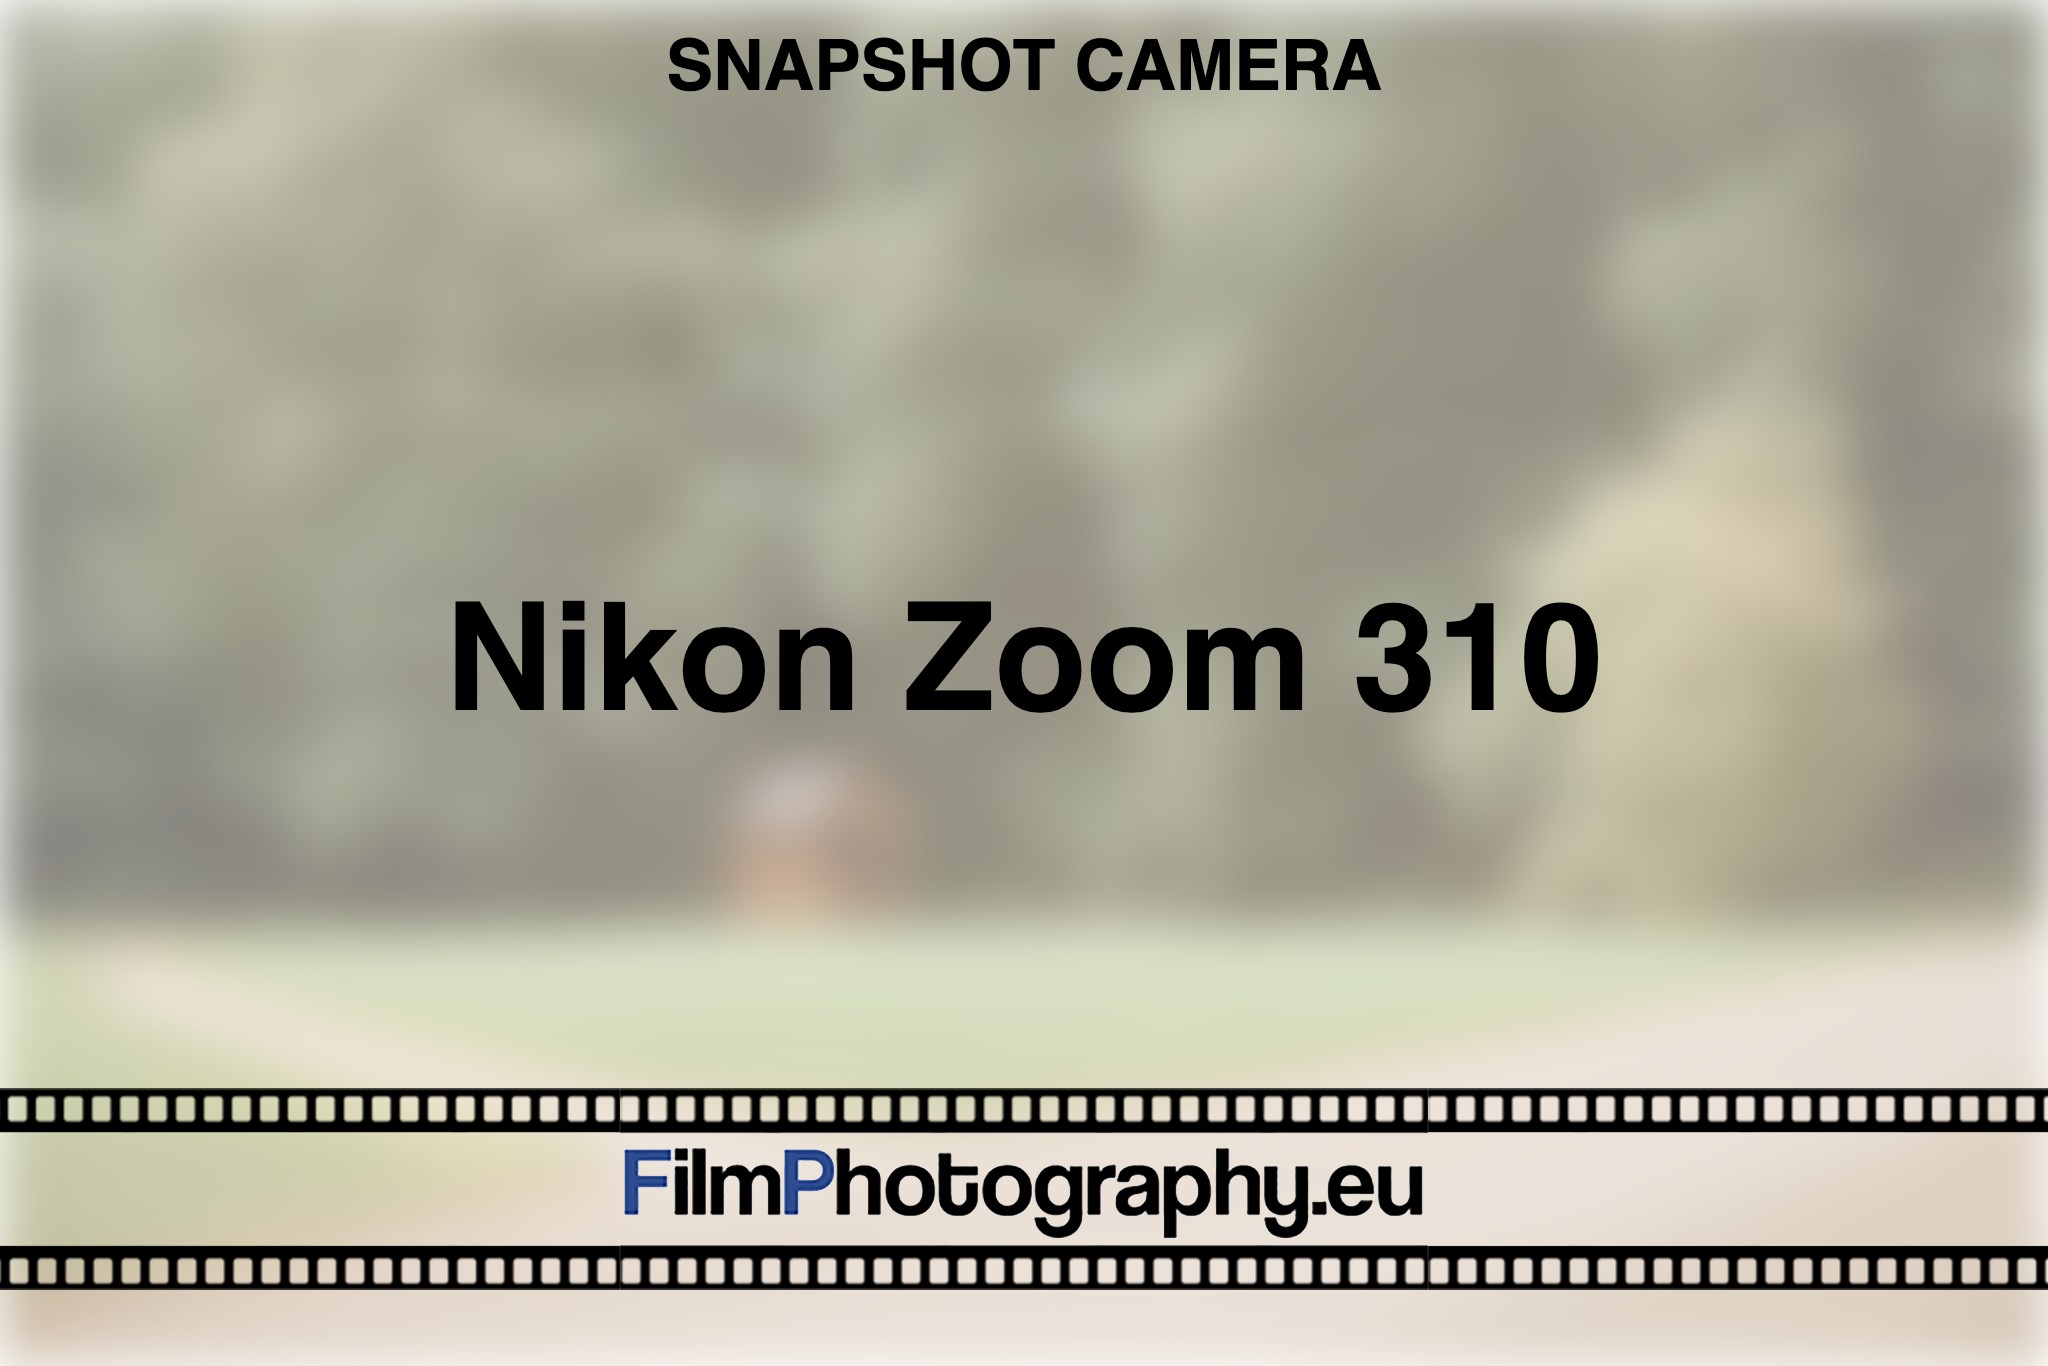 nikon-zoom-310-snapshot-camera-bnv